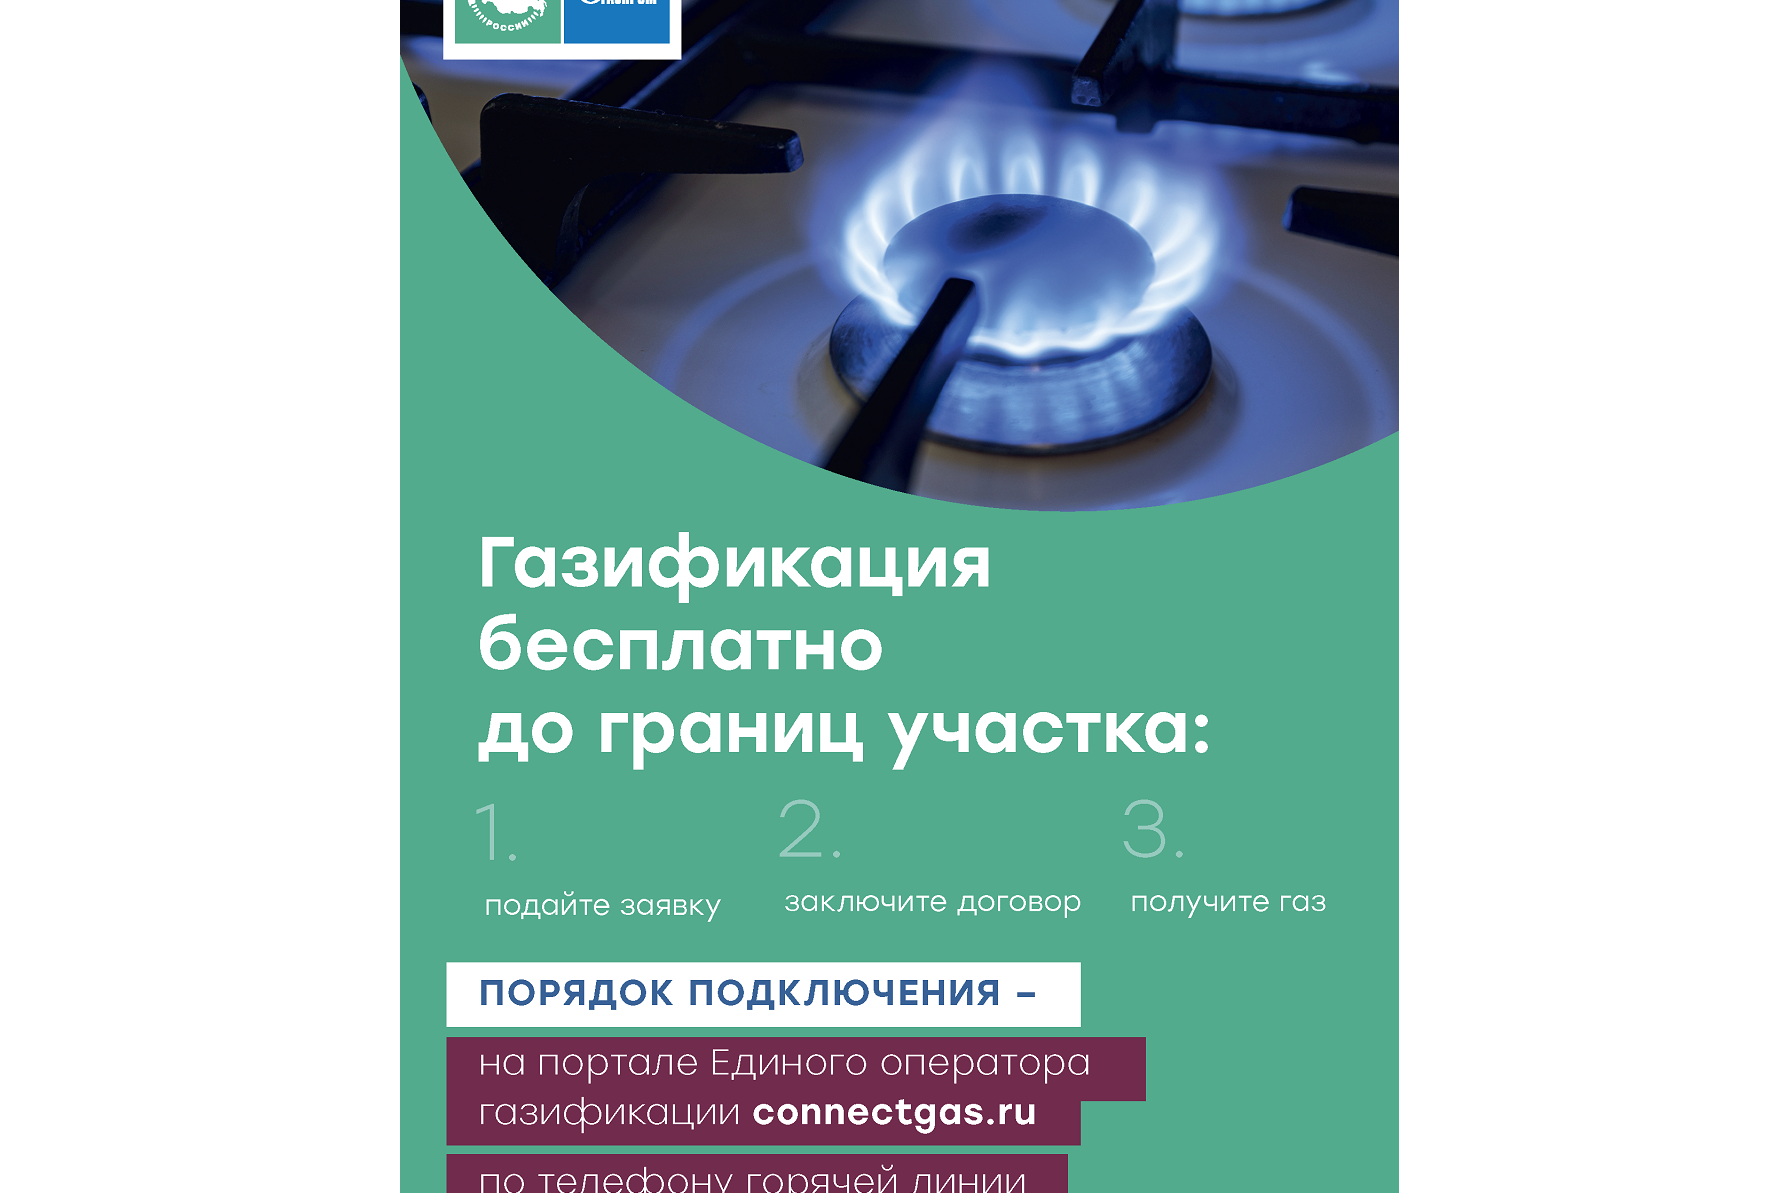 Программы газоснабжения и газификации